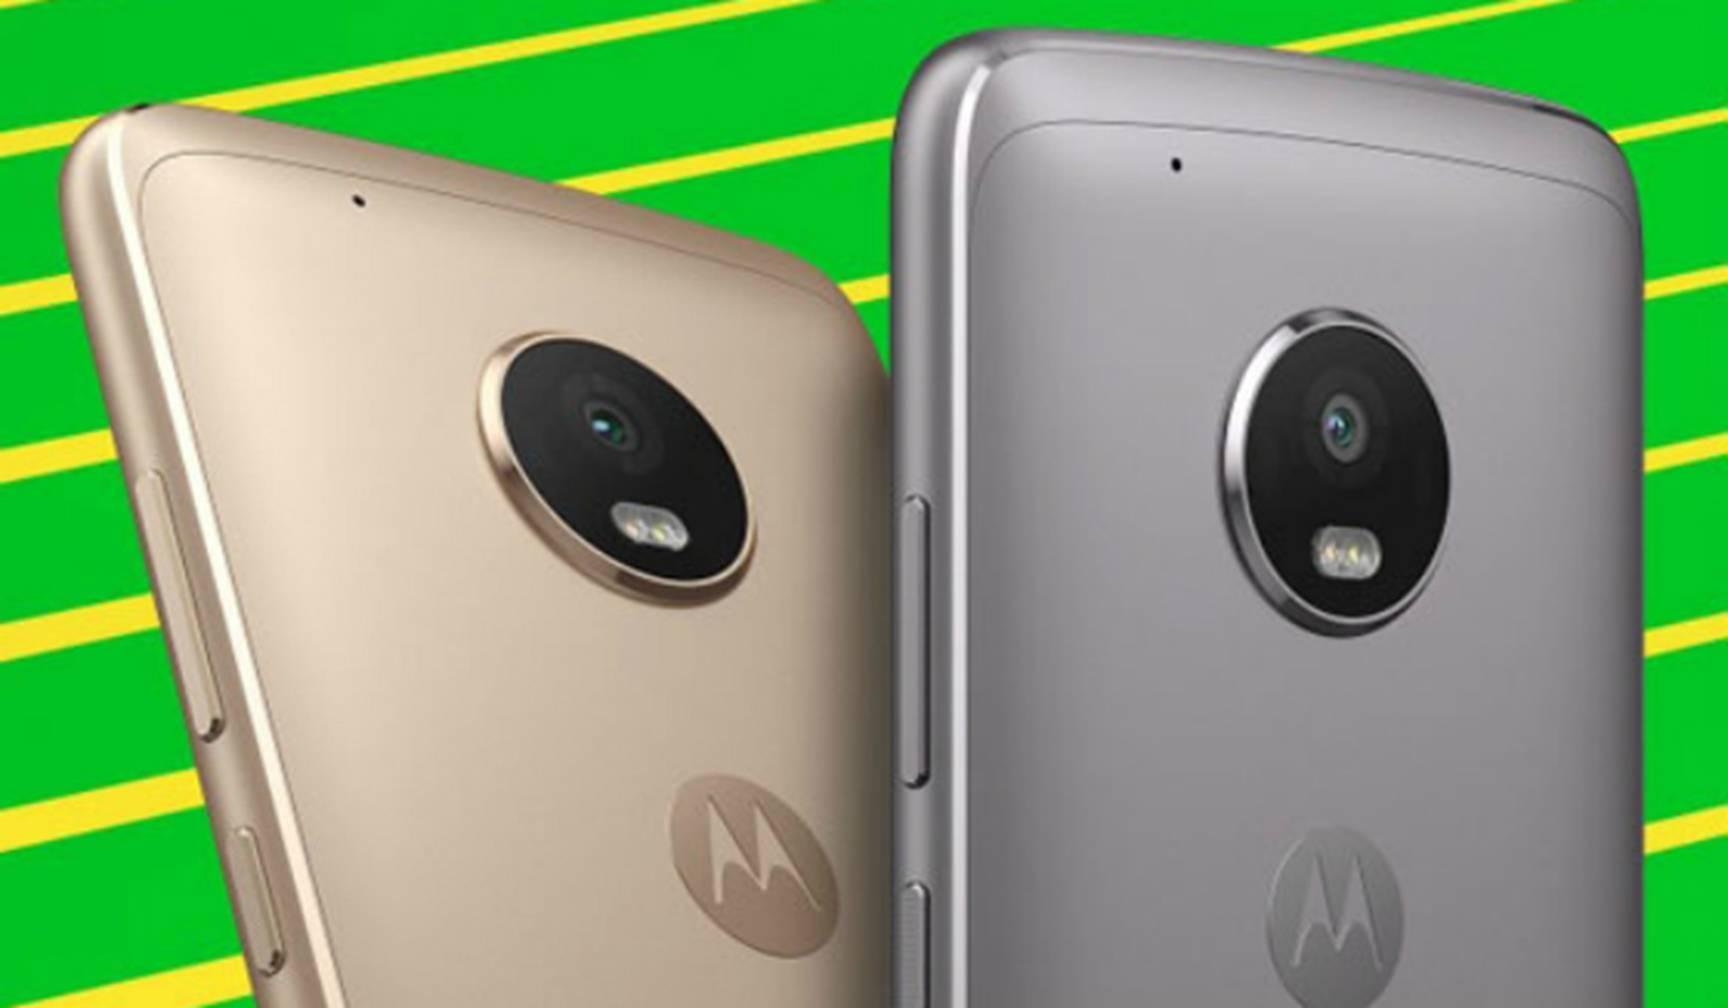 मोटोरोला के दो नए एंट्री लेवल स्मार्टफोन, Moto C और Moto C Plus को लेकर हुआ खुलासा